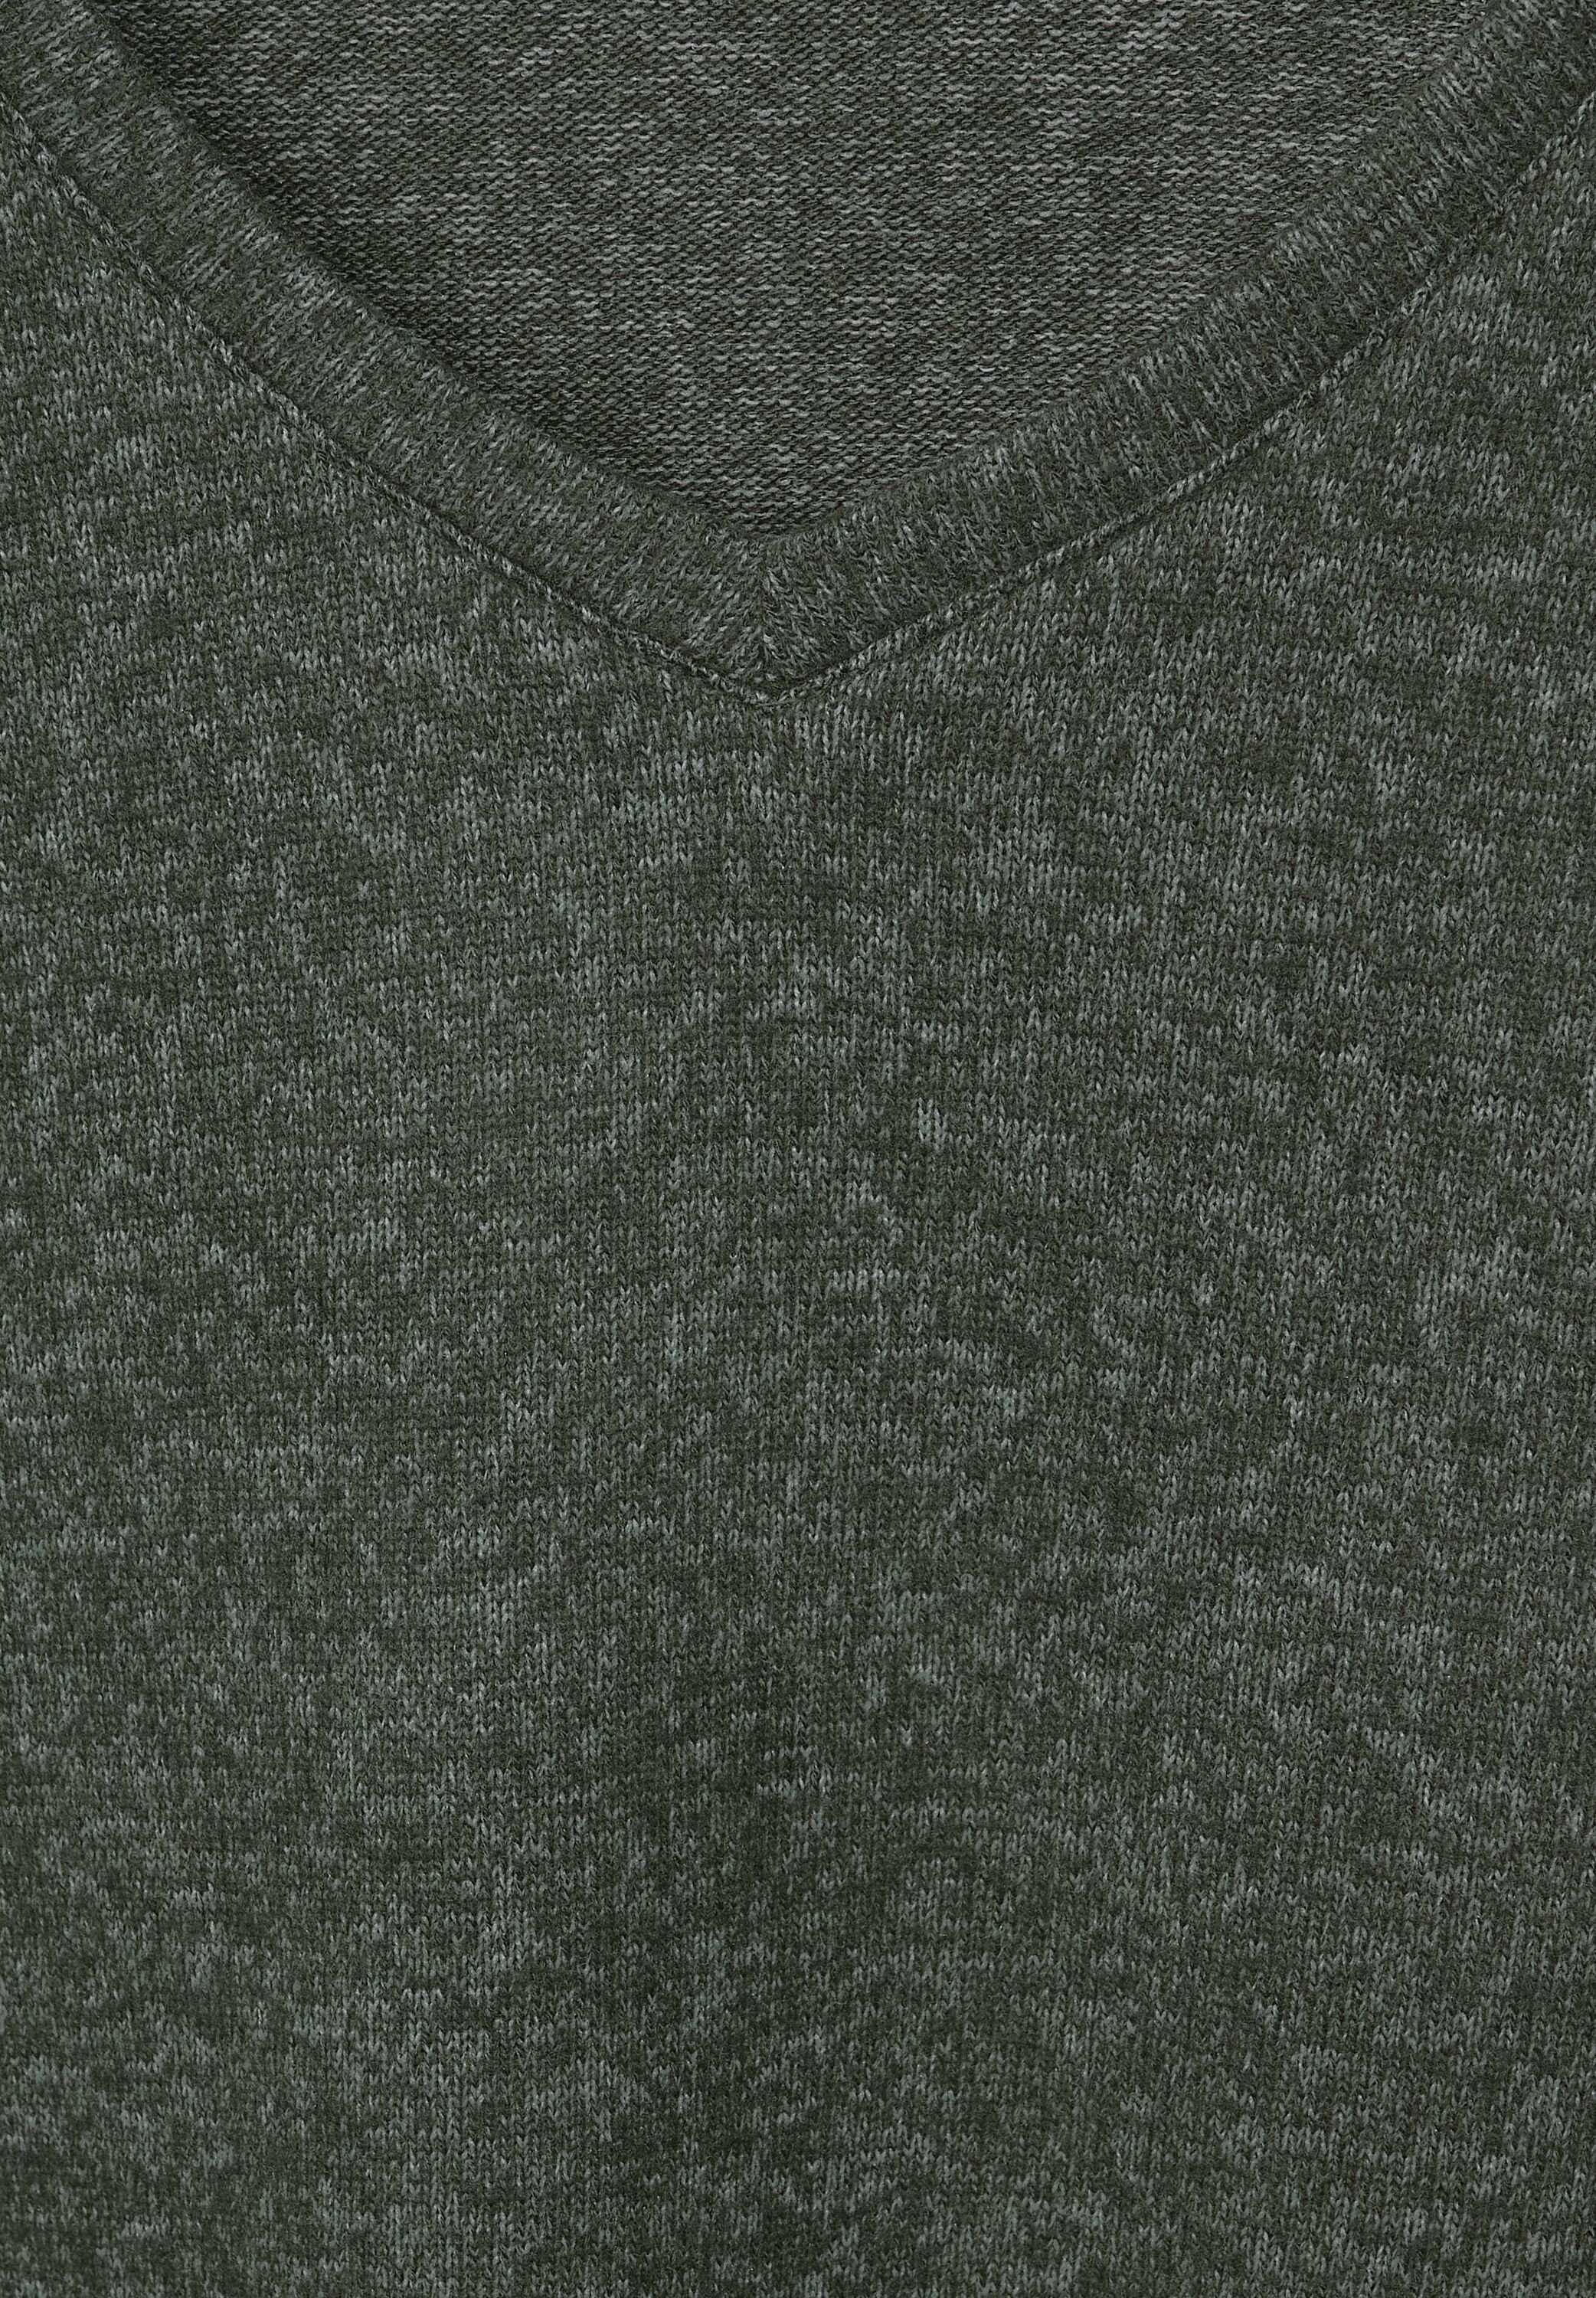 V-Ausschnitt 3/4-Arm-Shirt heather green Cecil melange mit